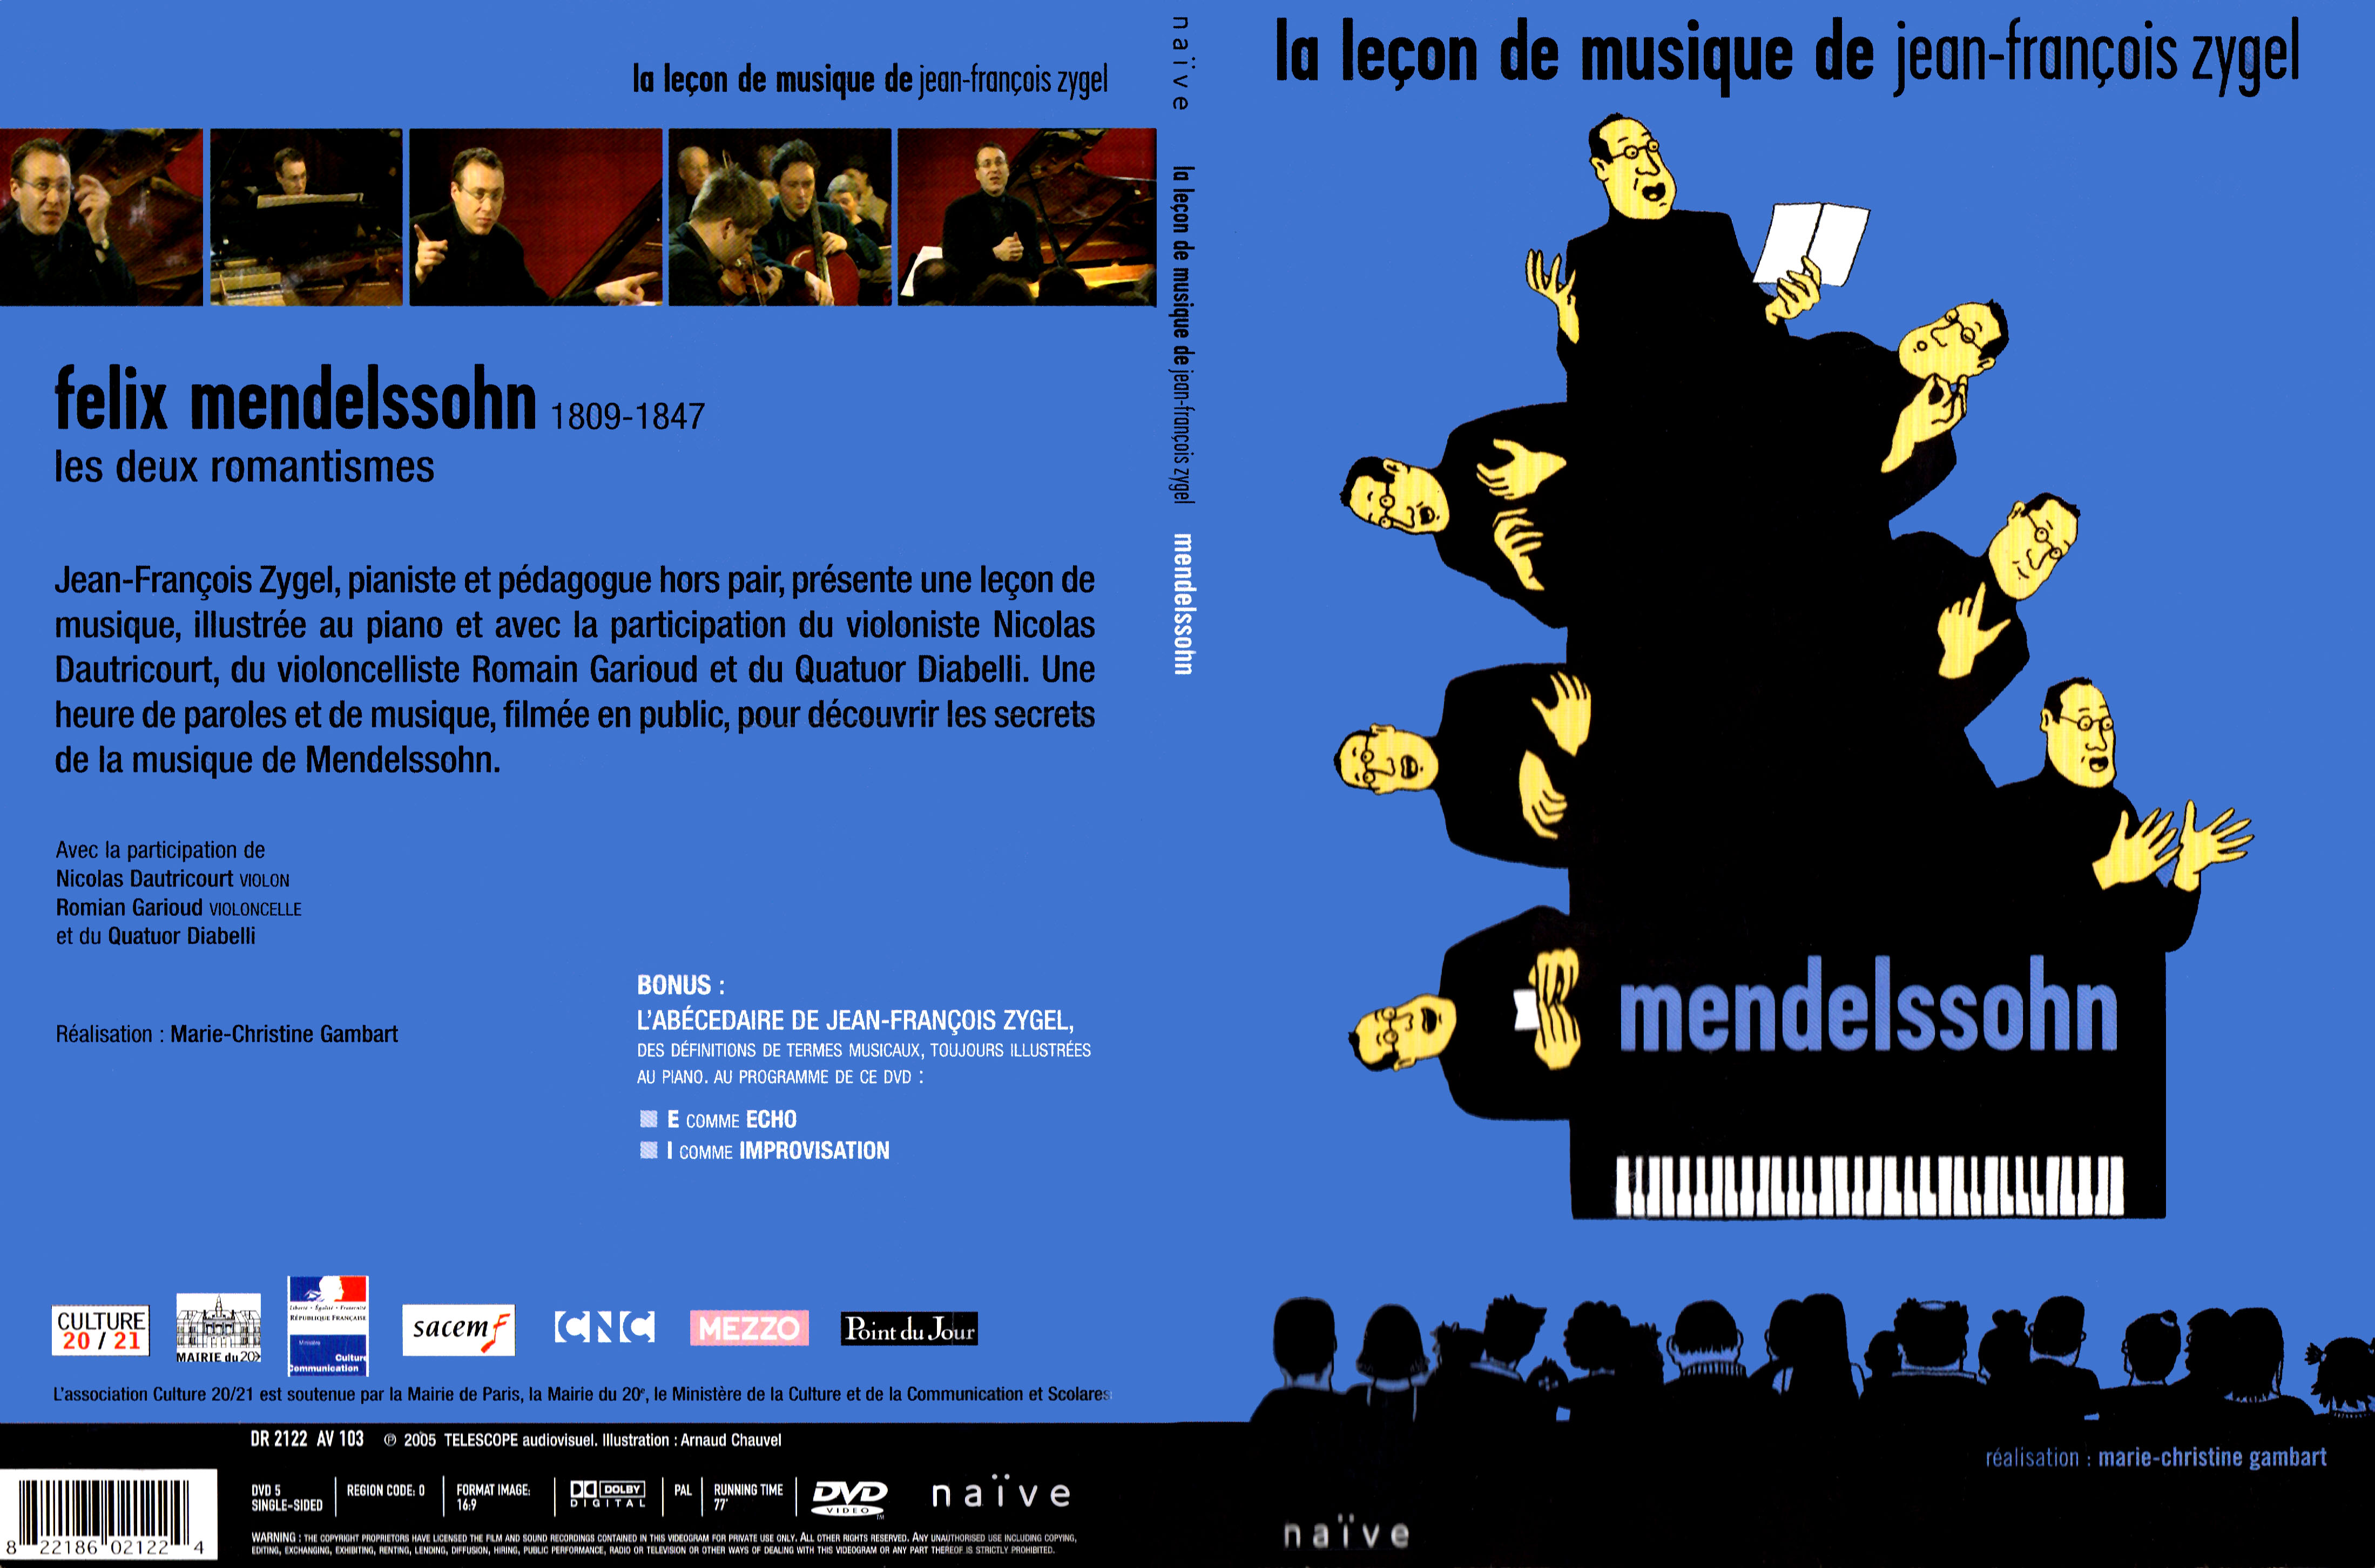 Jaquette DVD La lecon de musique de Jean-Francois Zygel - Mendelsohn